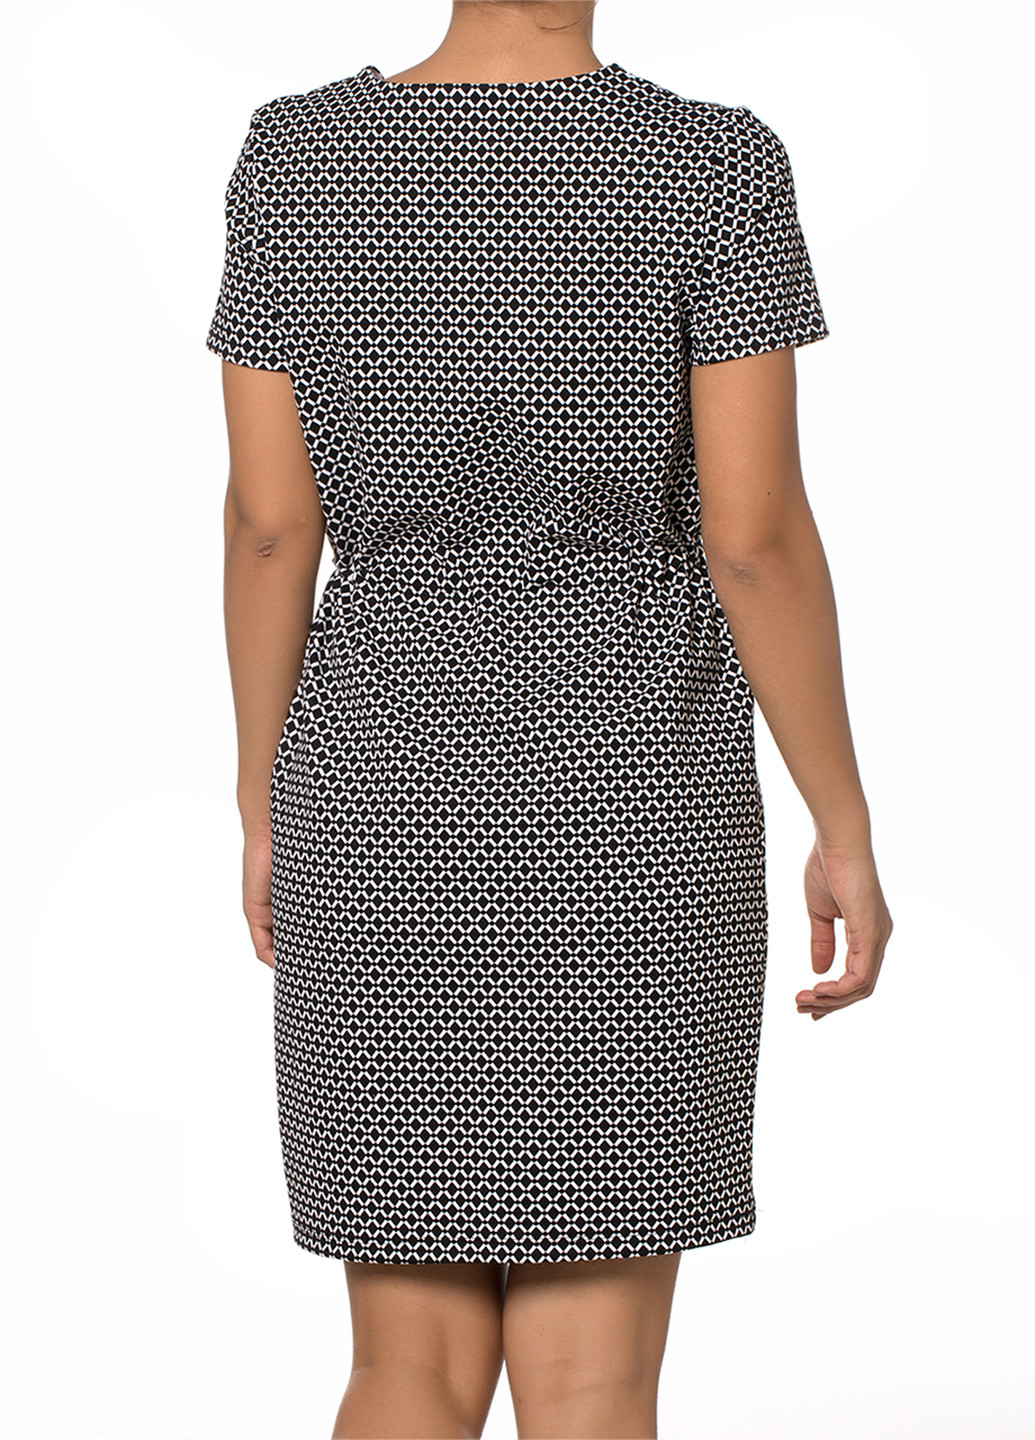 Ночная рубашка DoReMi геометрическая чёрно-белую домашняя хлопок